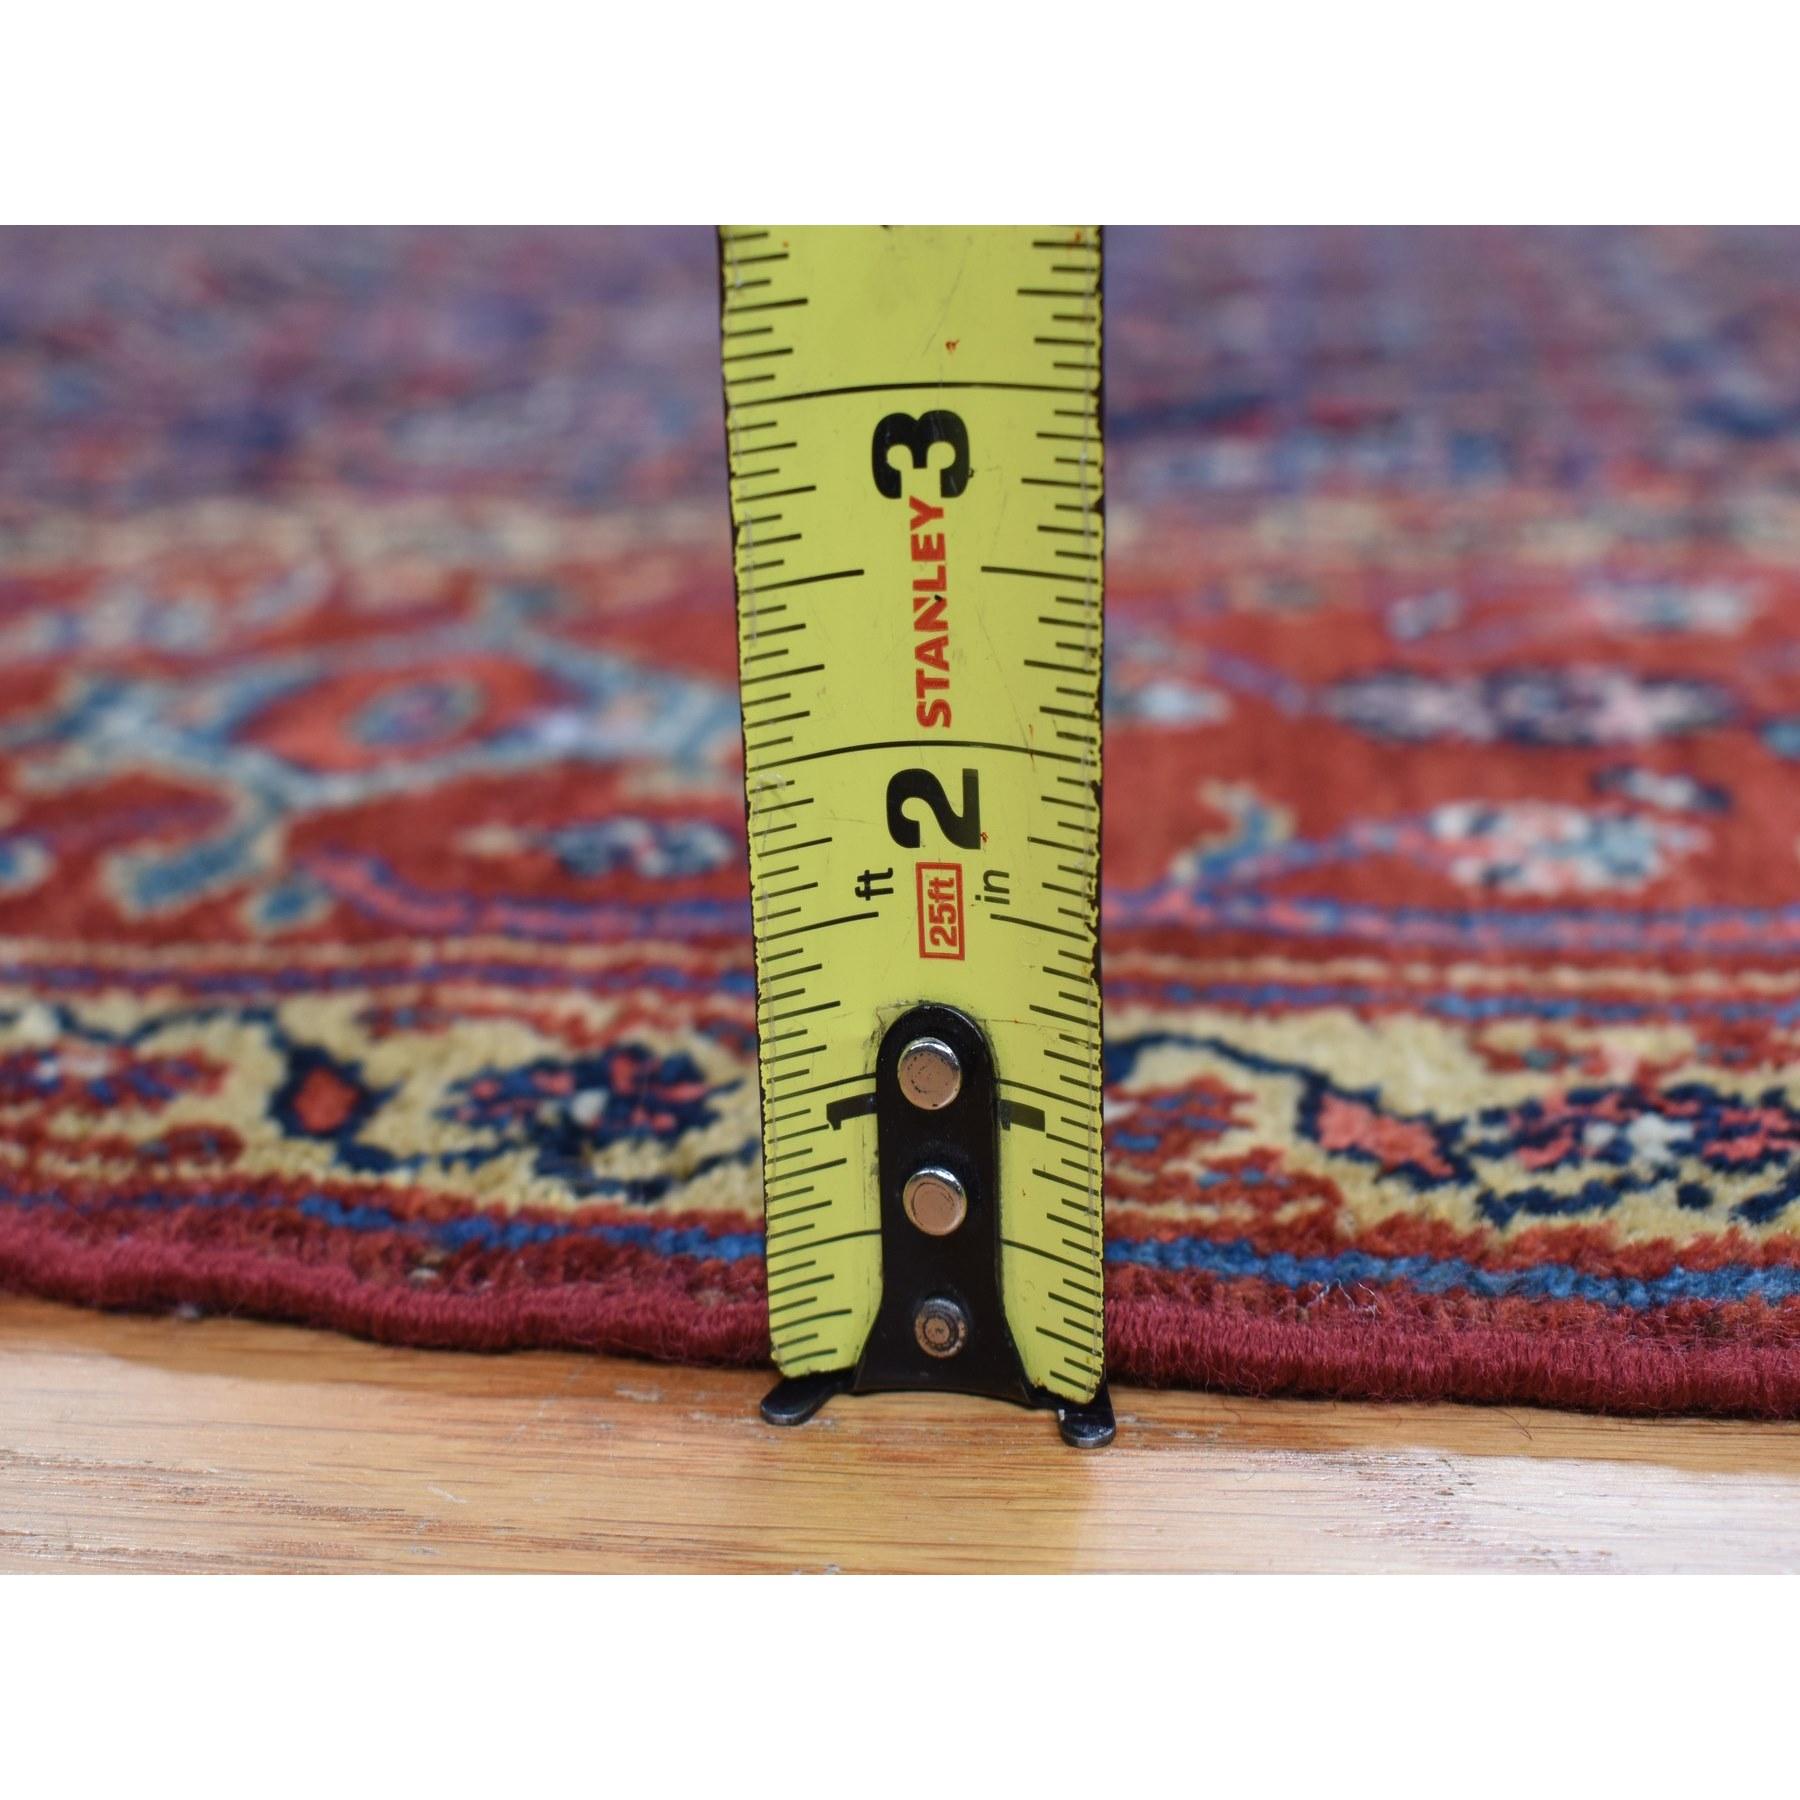 Blauer antiker persischer Bibikabad handgeknüpfter Teppich aus Wolle Gallery Size 7'1